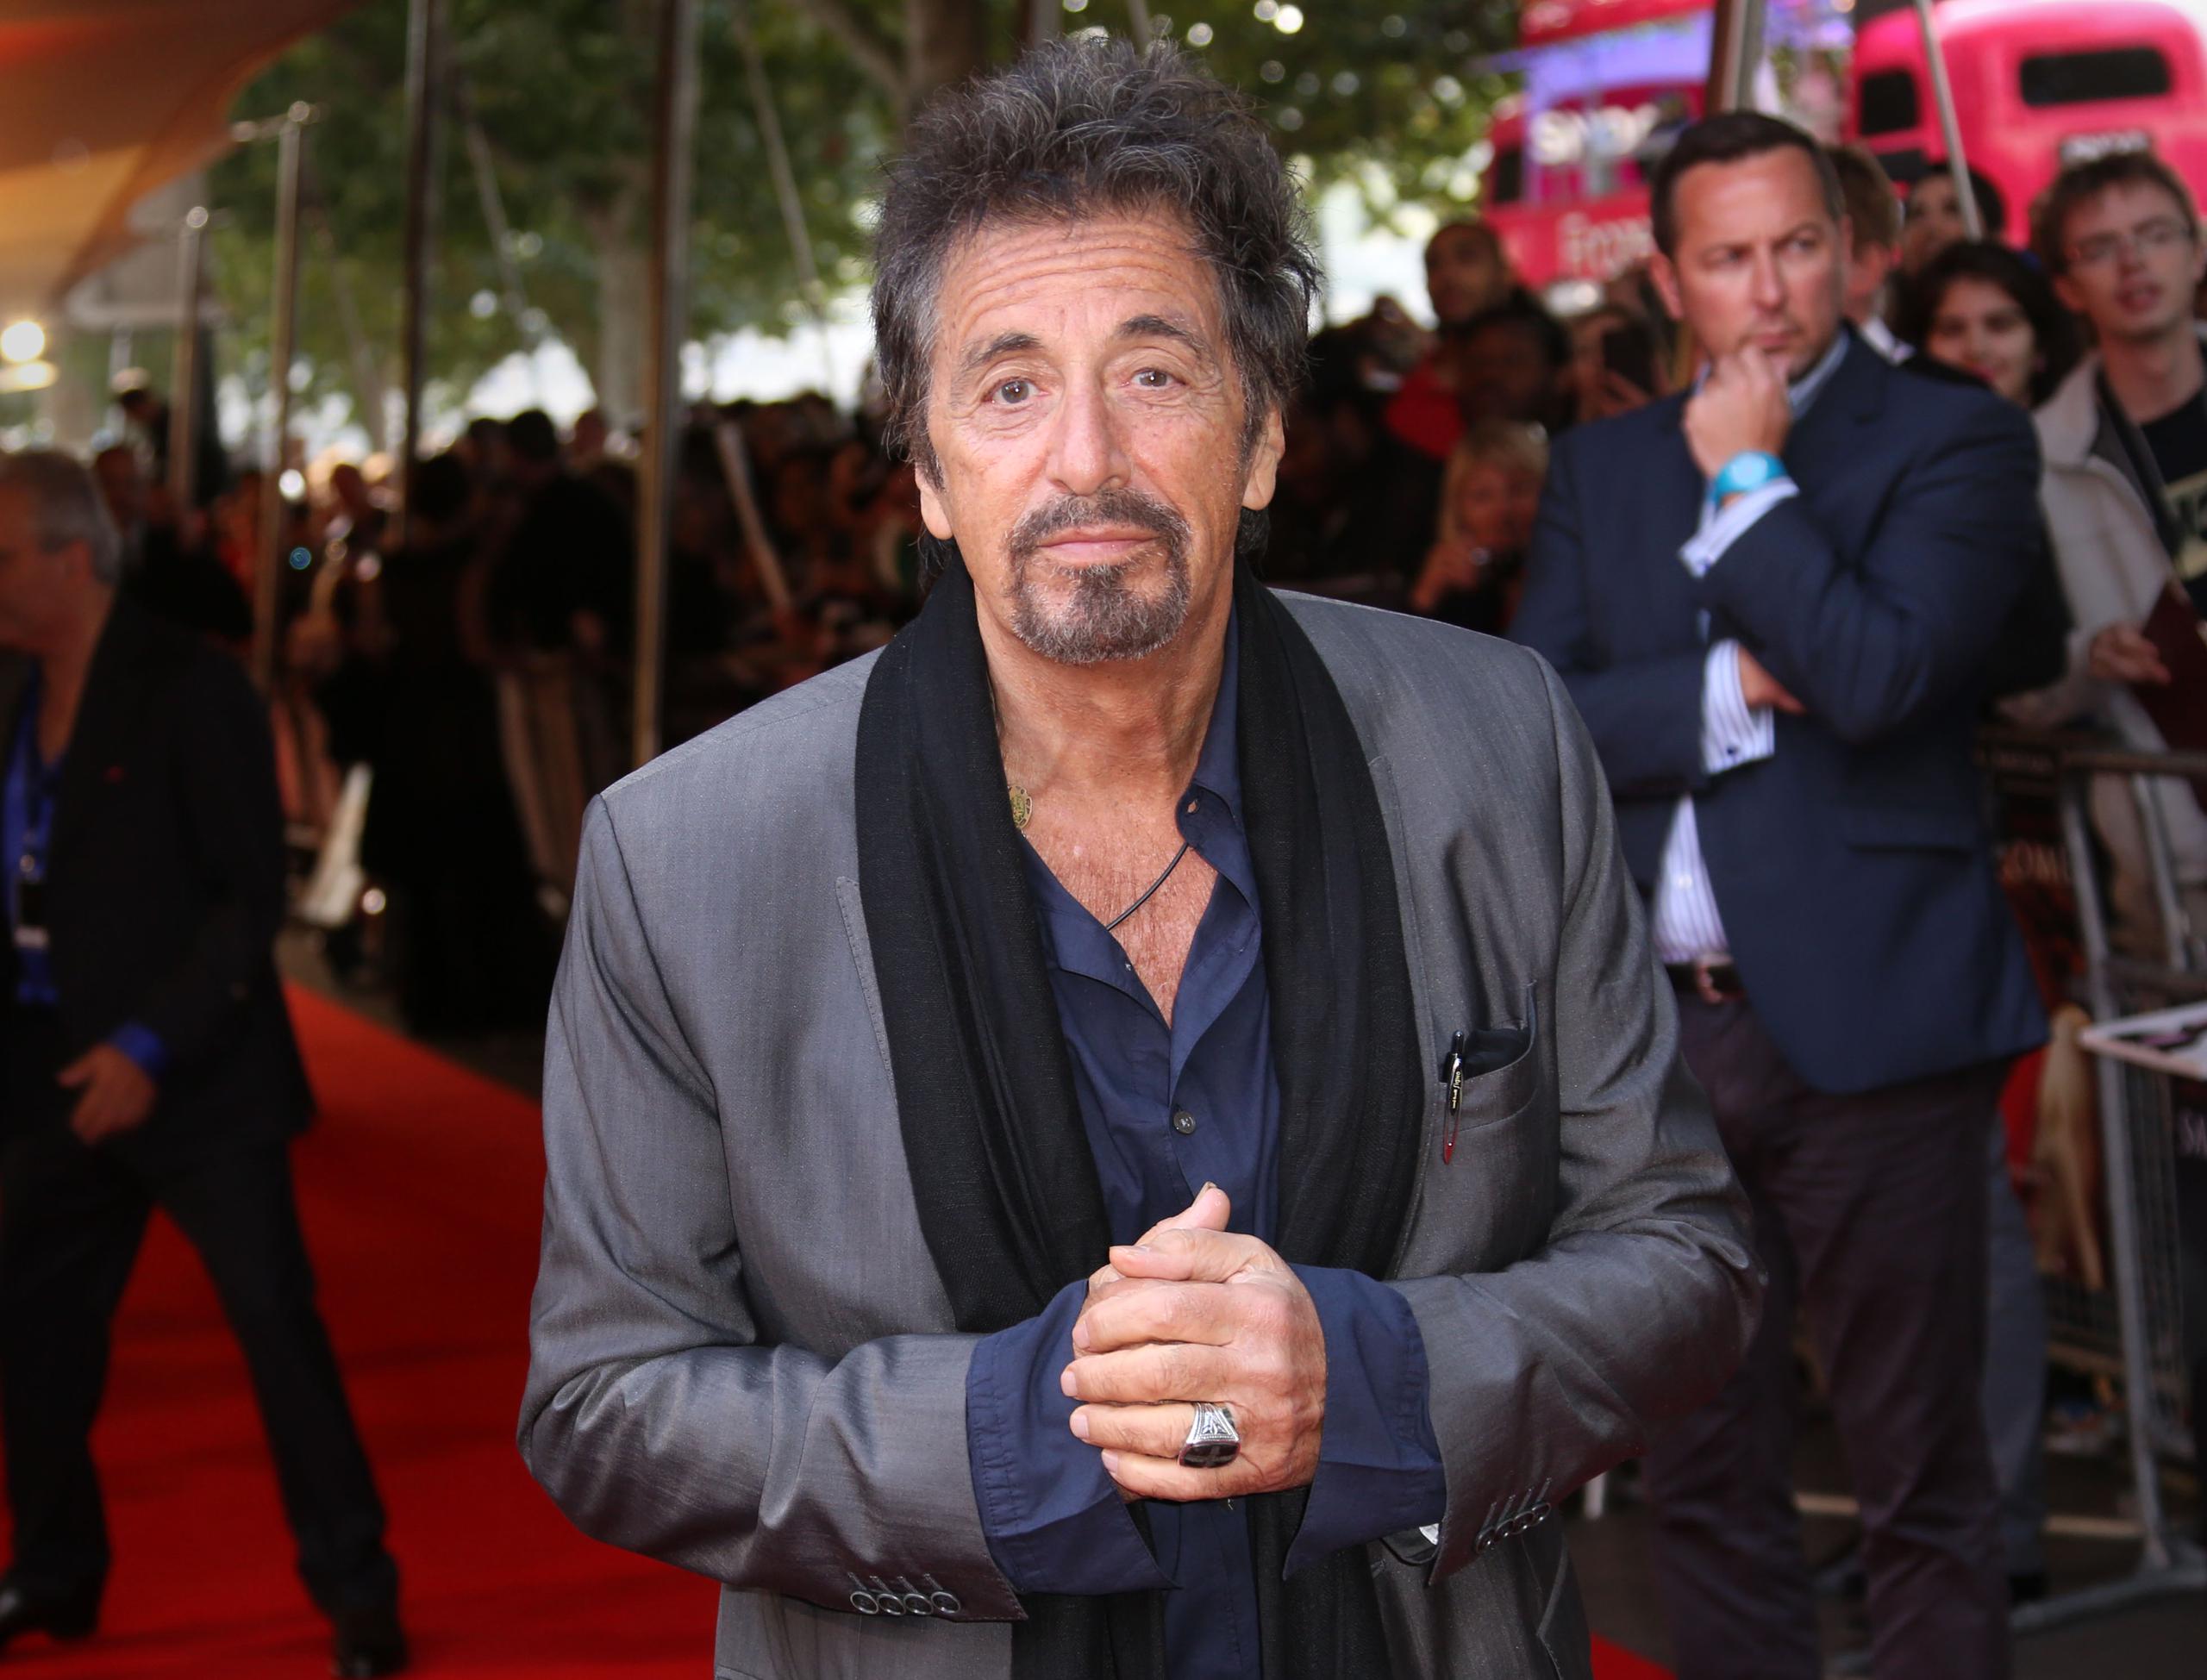 A los 74 años, Pacino dice que a veces siente el peso de la edad. (The Associated Press)